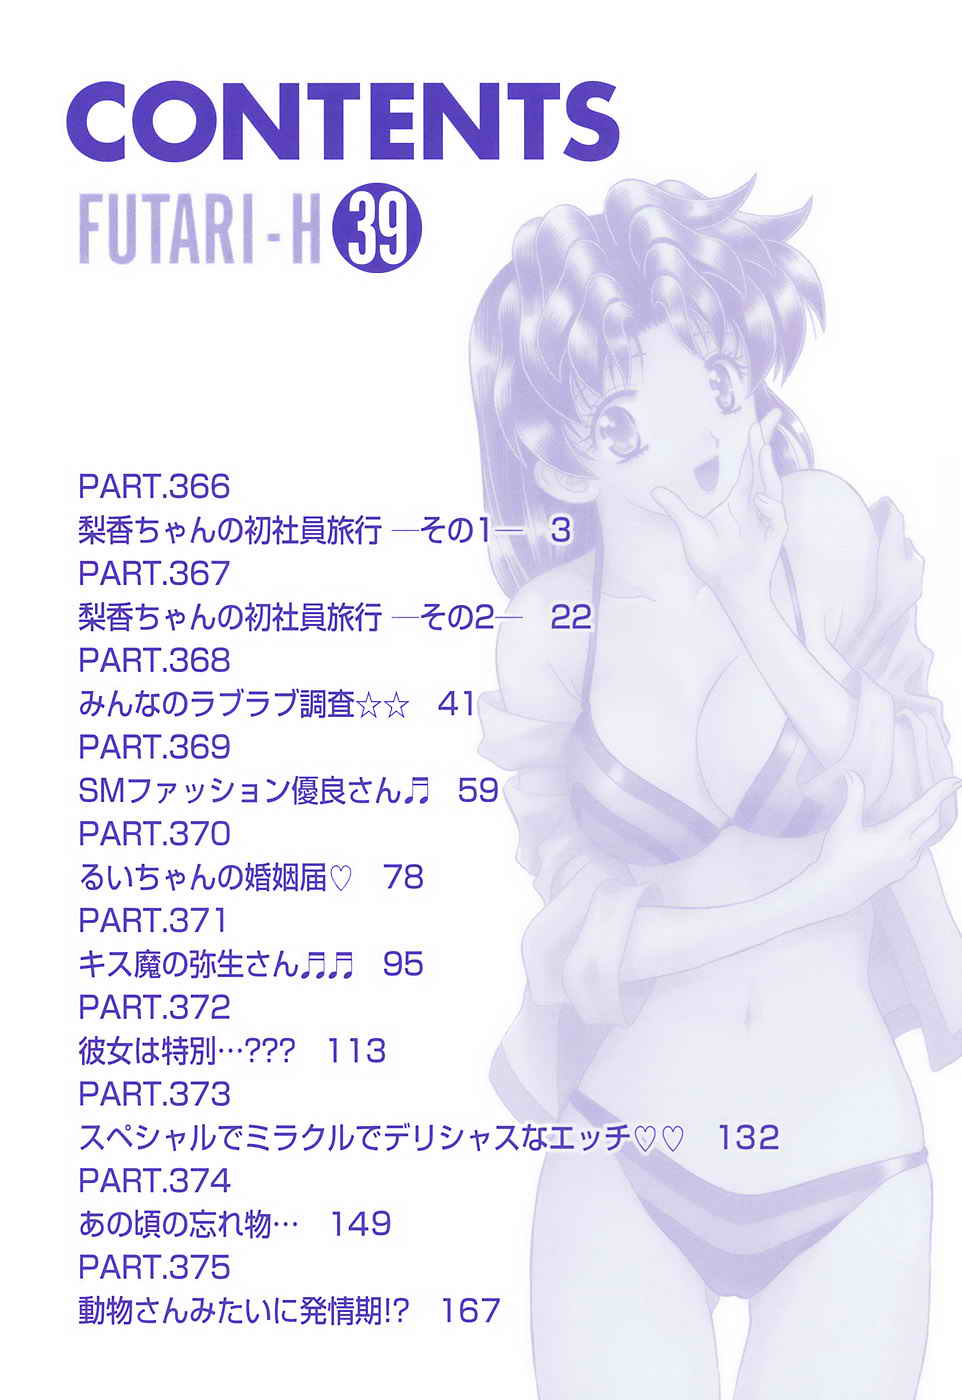 Futari Ecchi 39 Volume 39 